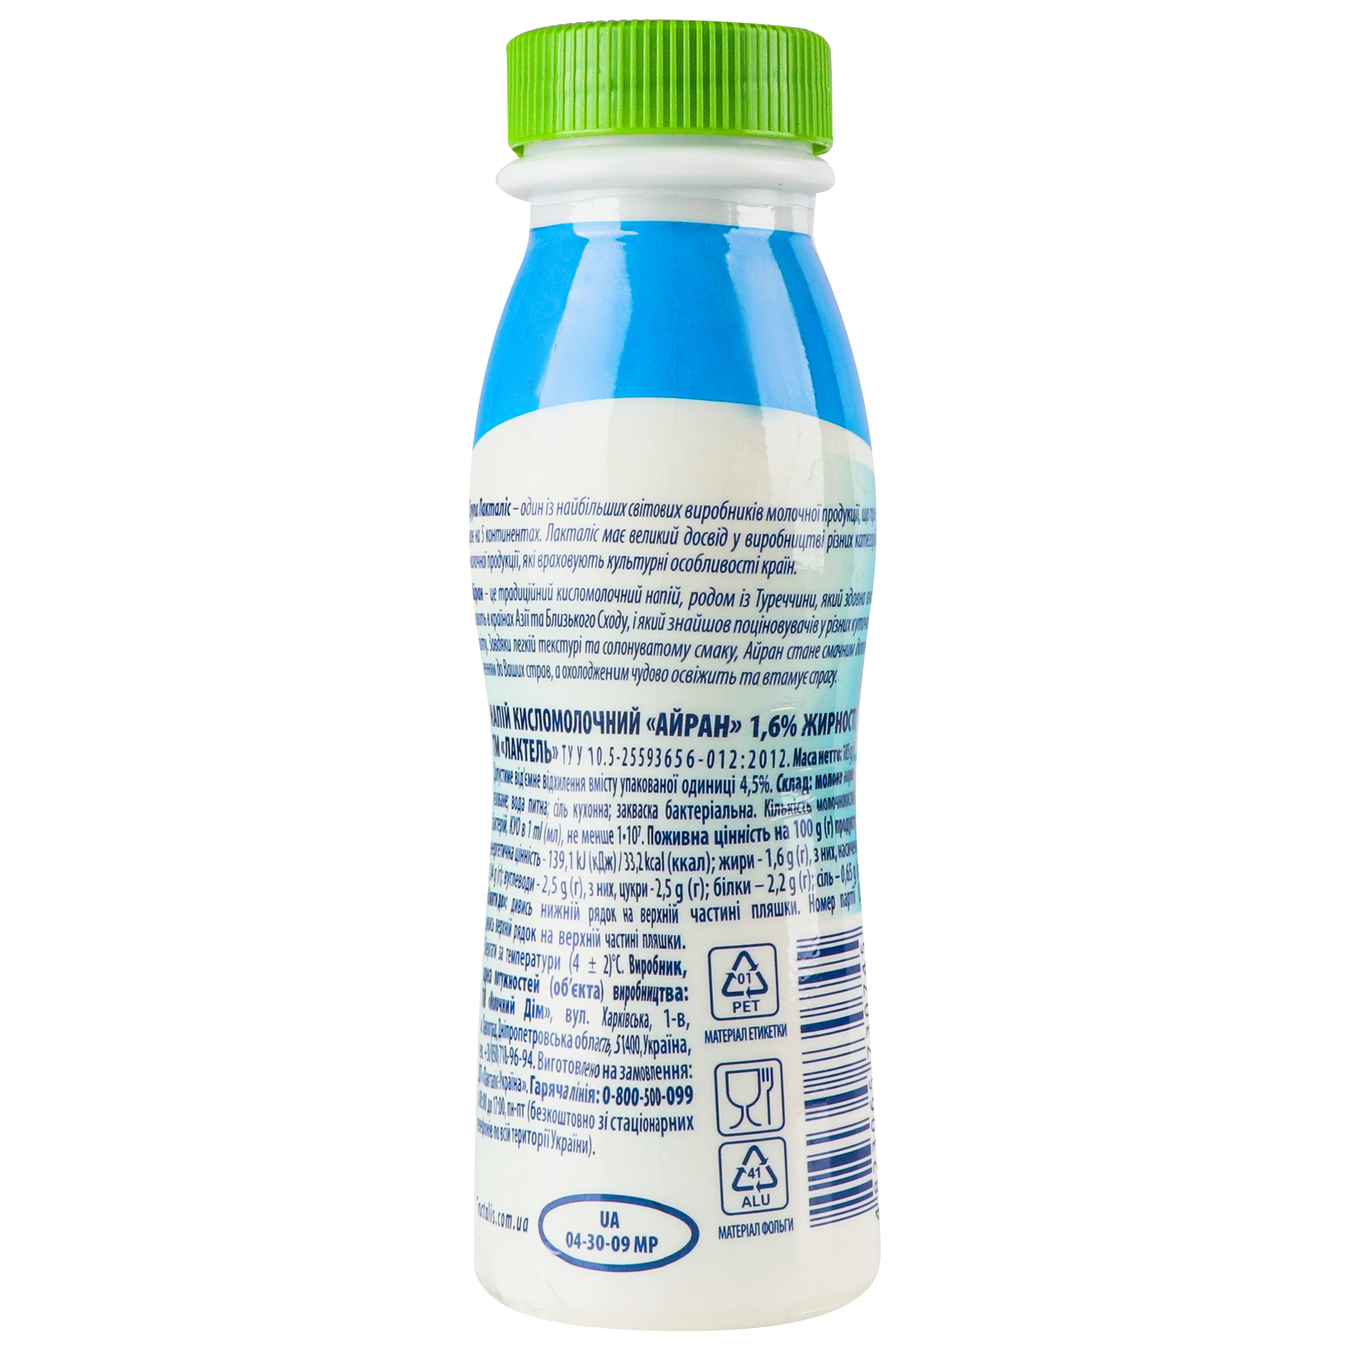 Напиток кисломолочный Лактель Айран питьевая бутылка 1,6% 185г 2